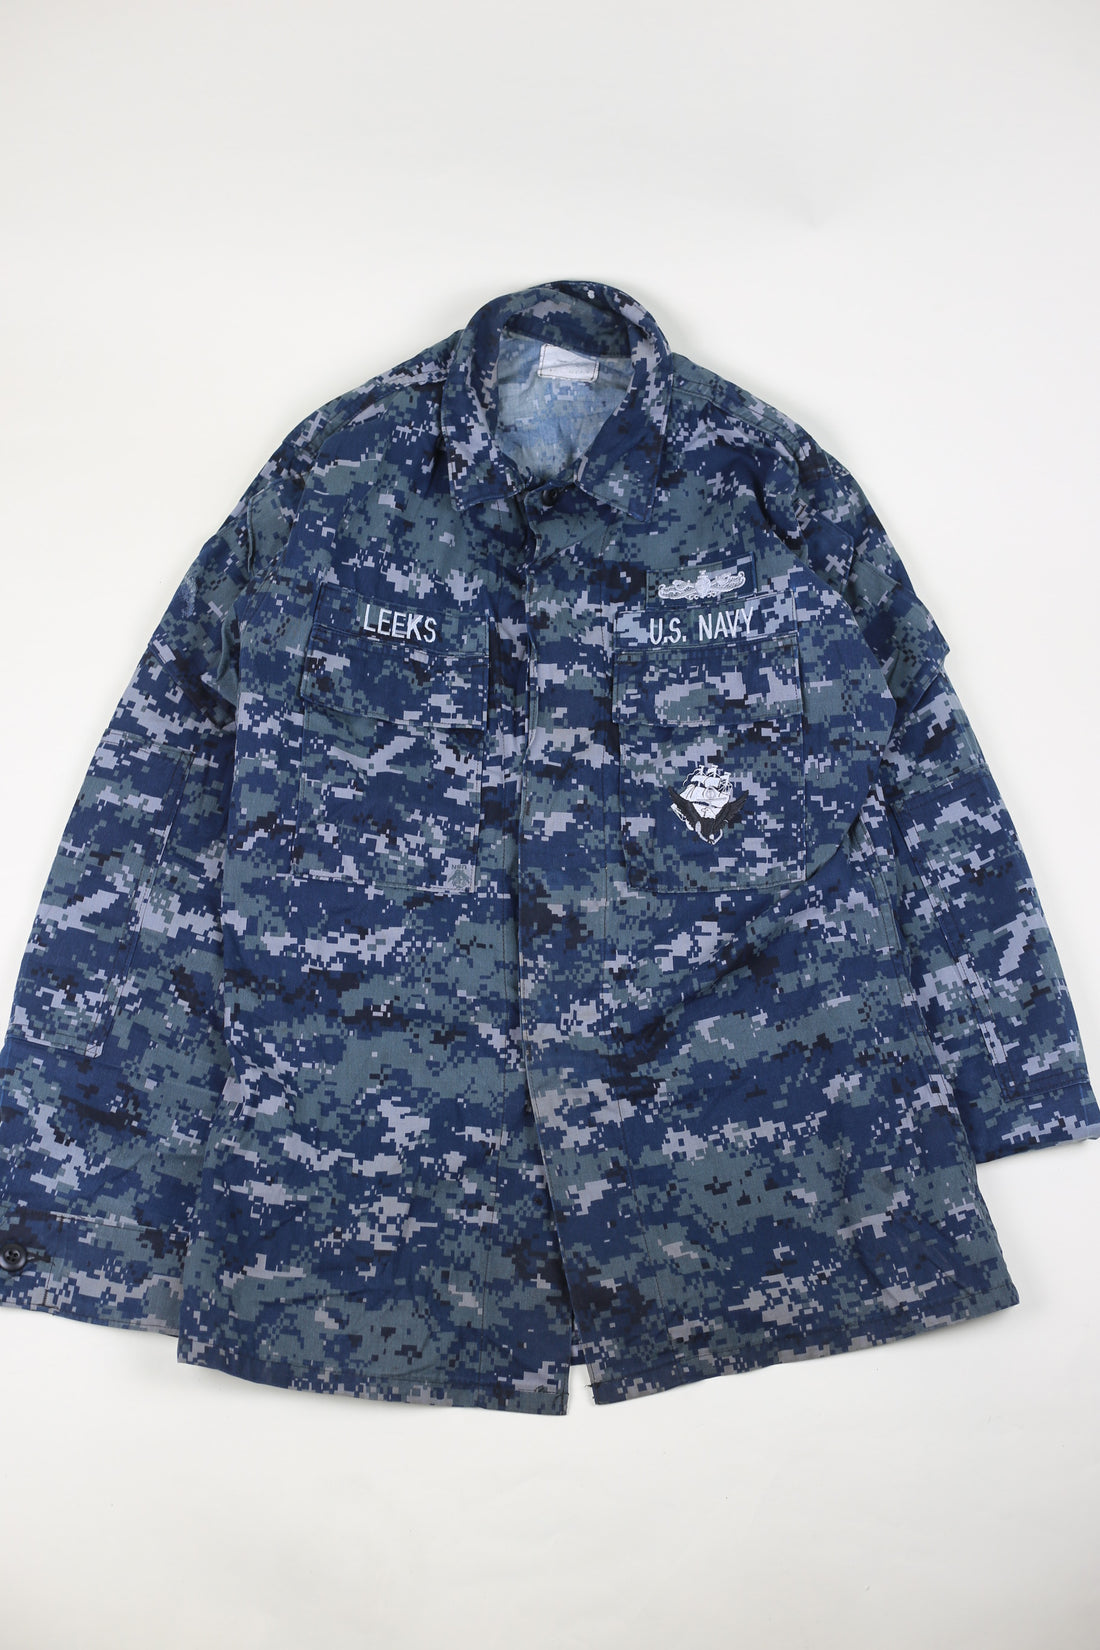 Marpat Us Navy Overshirt Shirt - M -